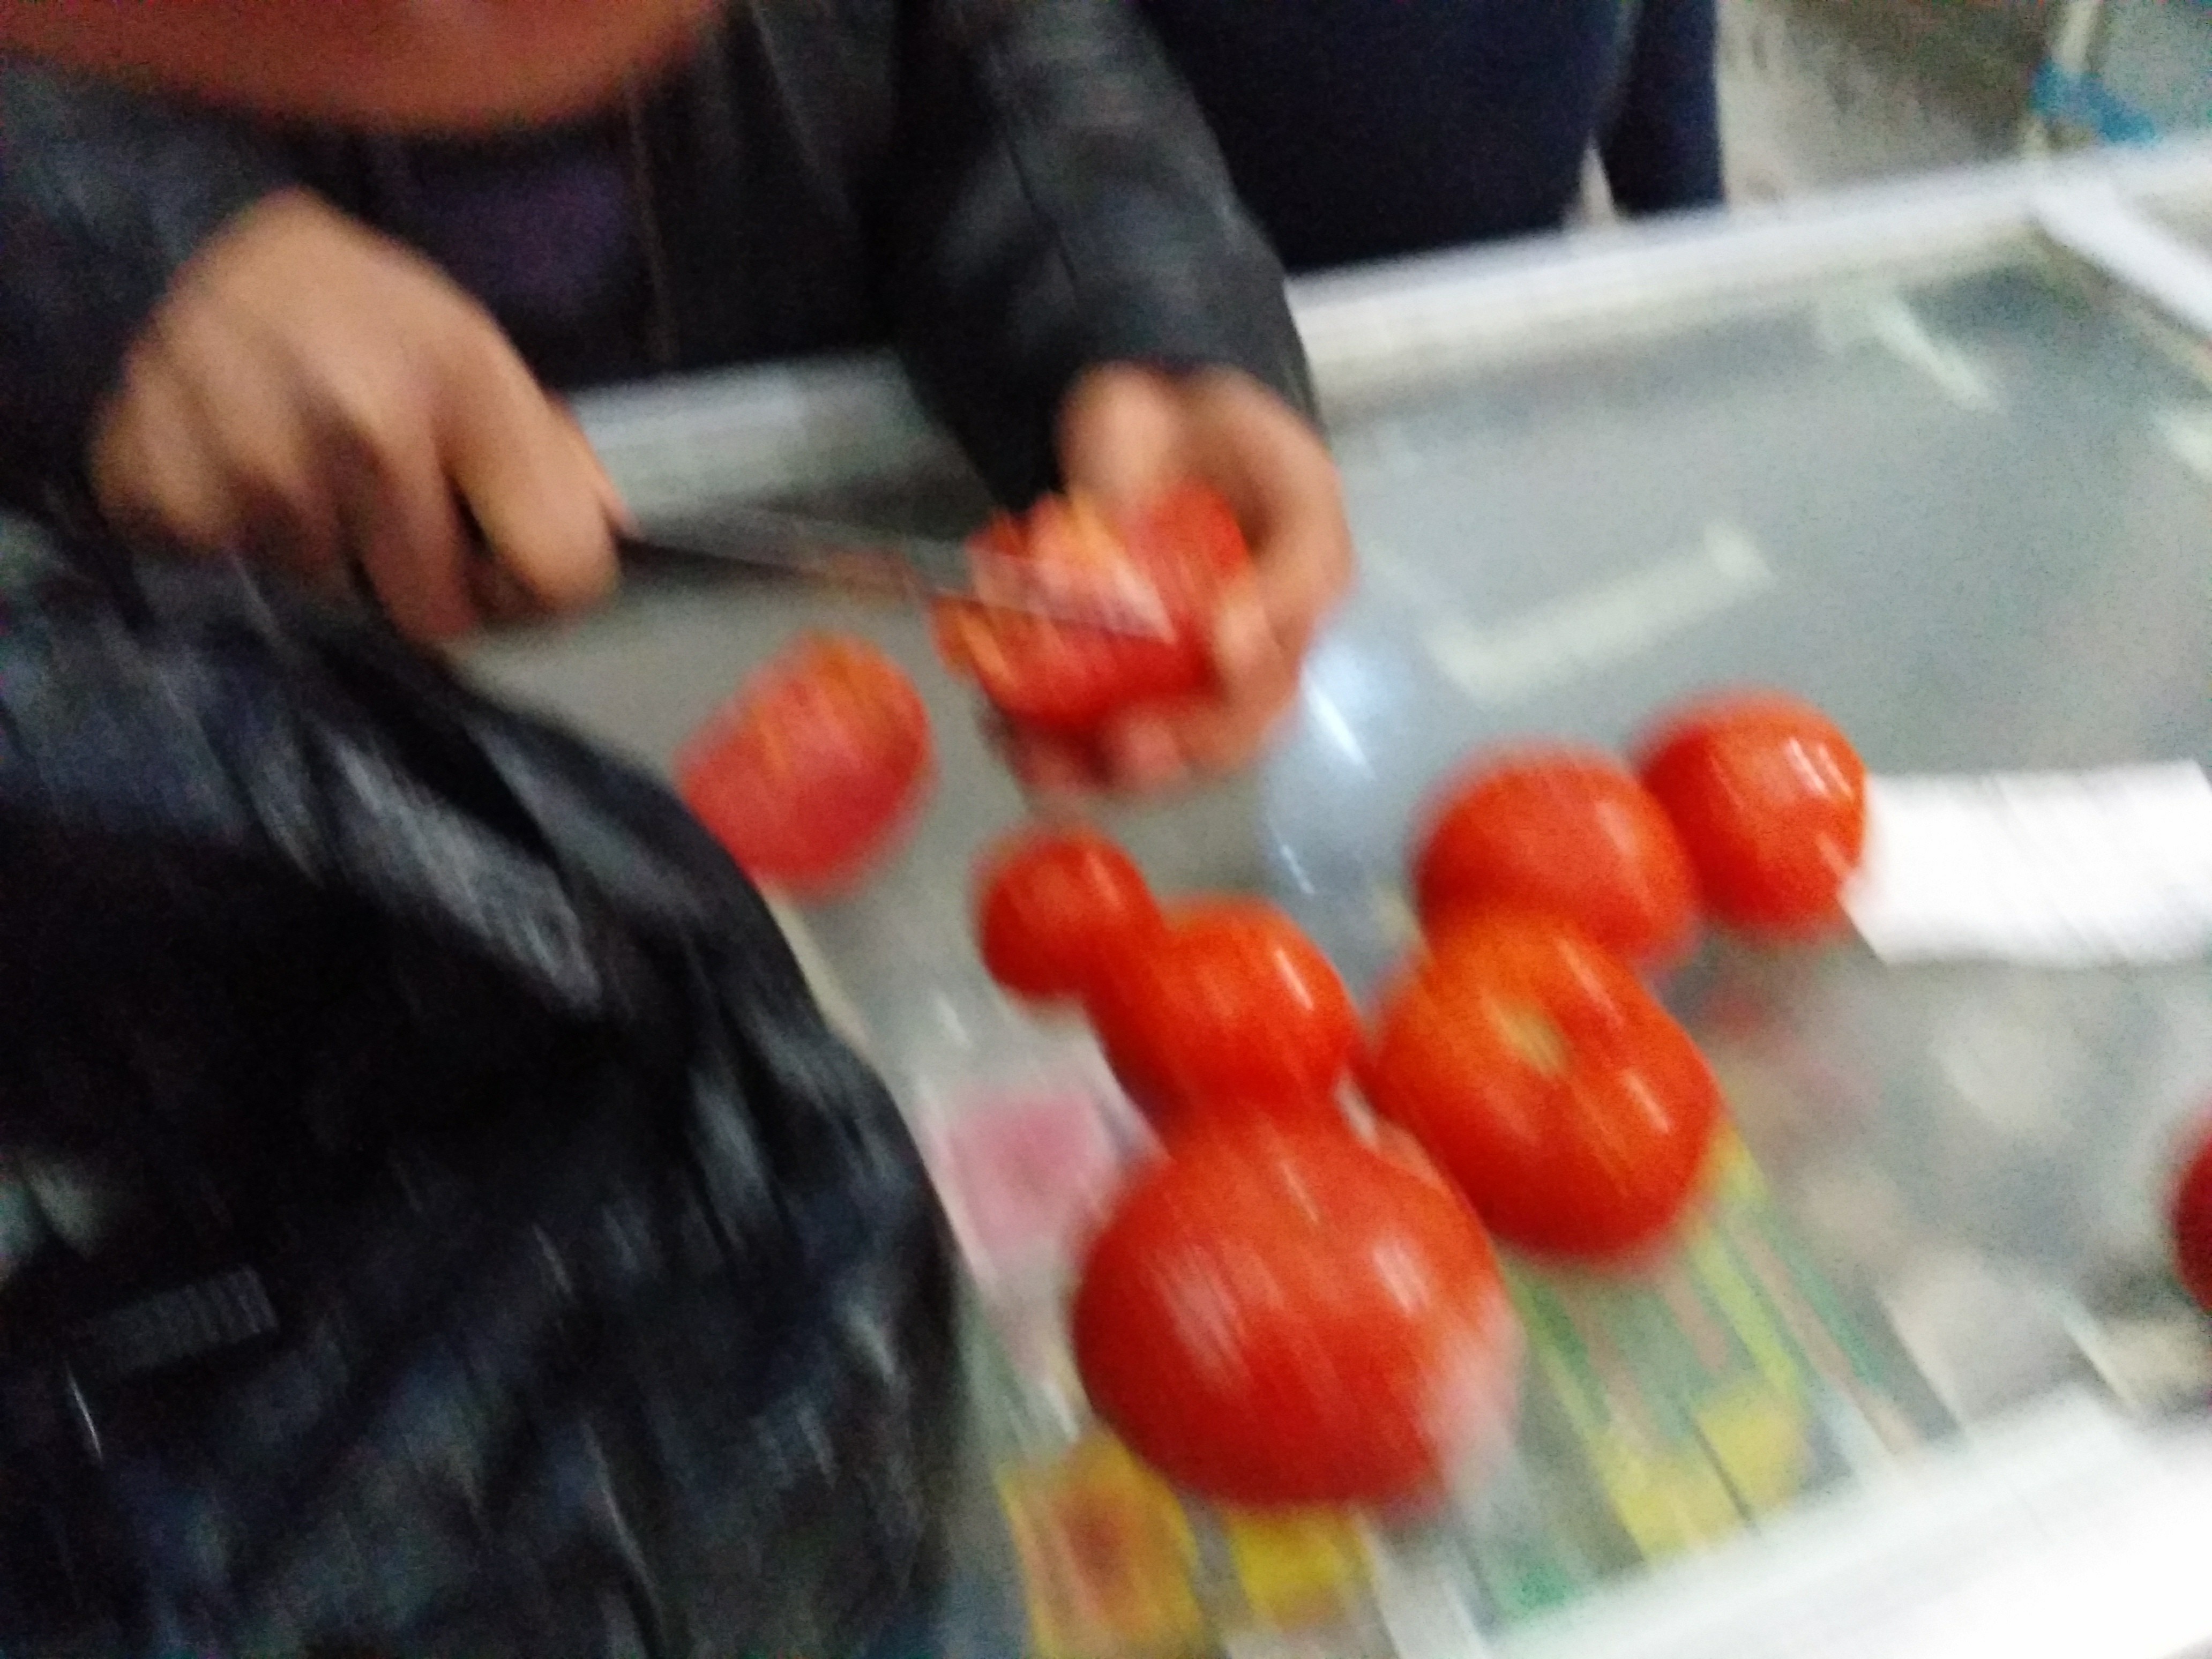 احد الطلاب يحاول قطع الطماطم بالسكين